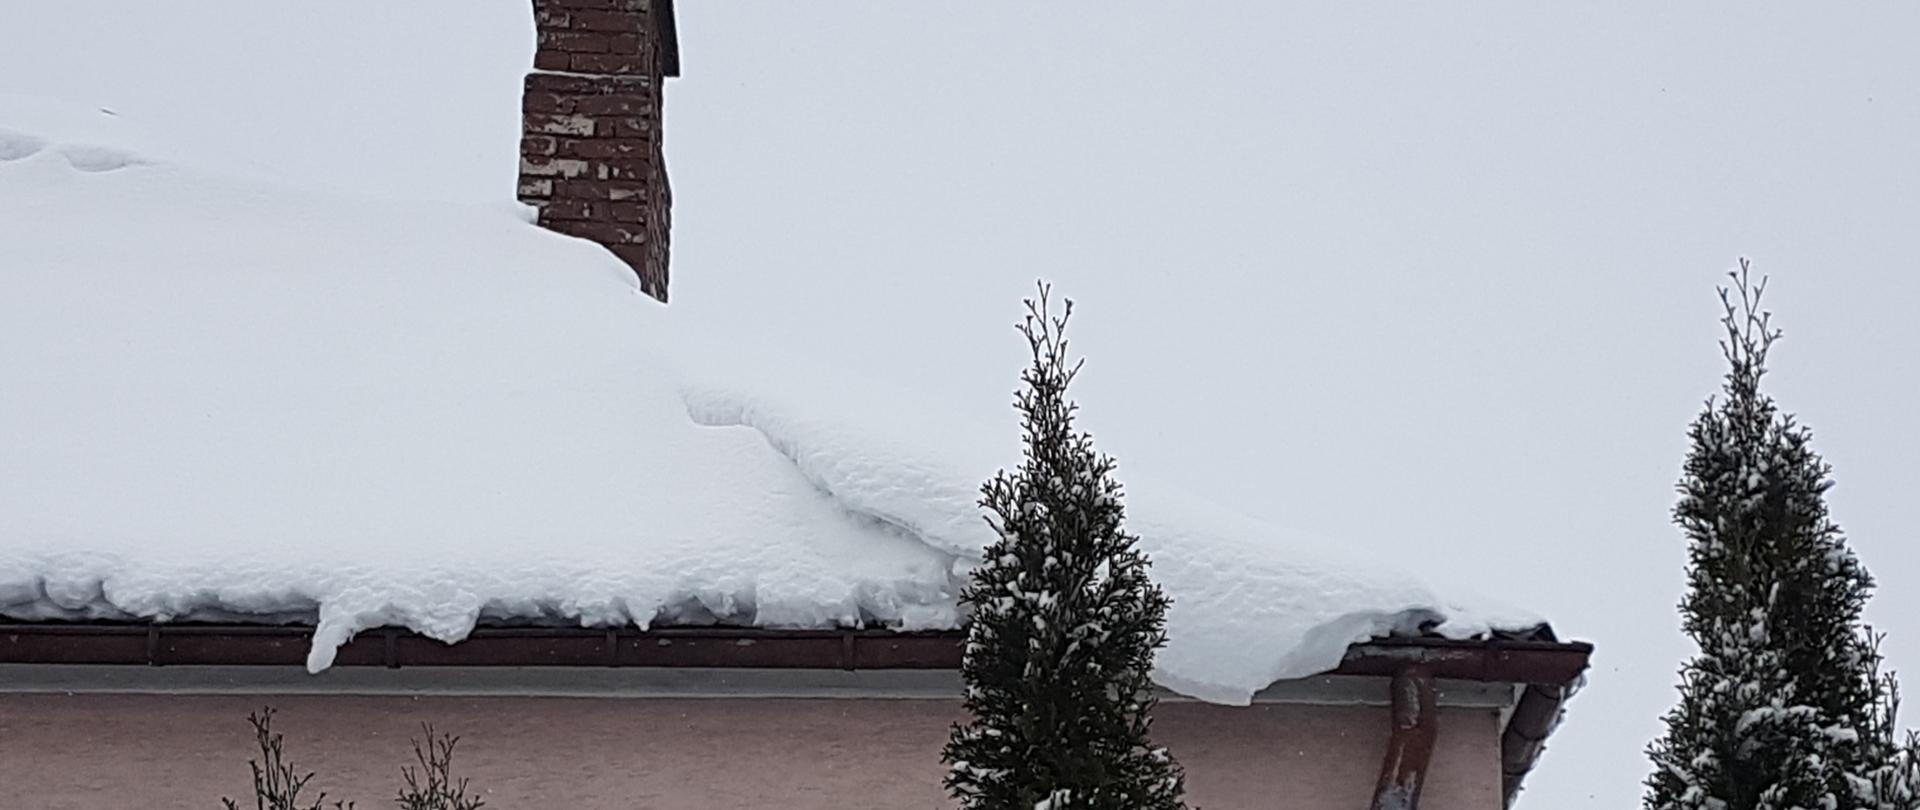 zdjęcie przedstawia zalegającą dużą ilość śniegu na dachu budynku mieszkalnego